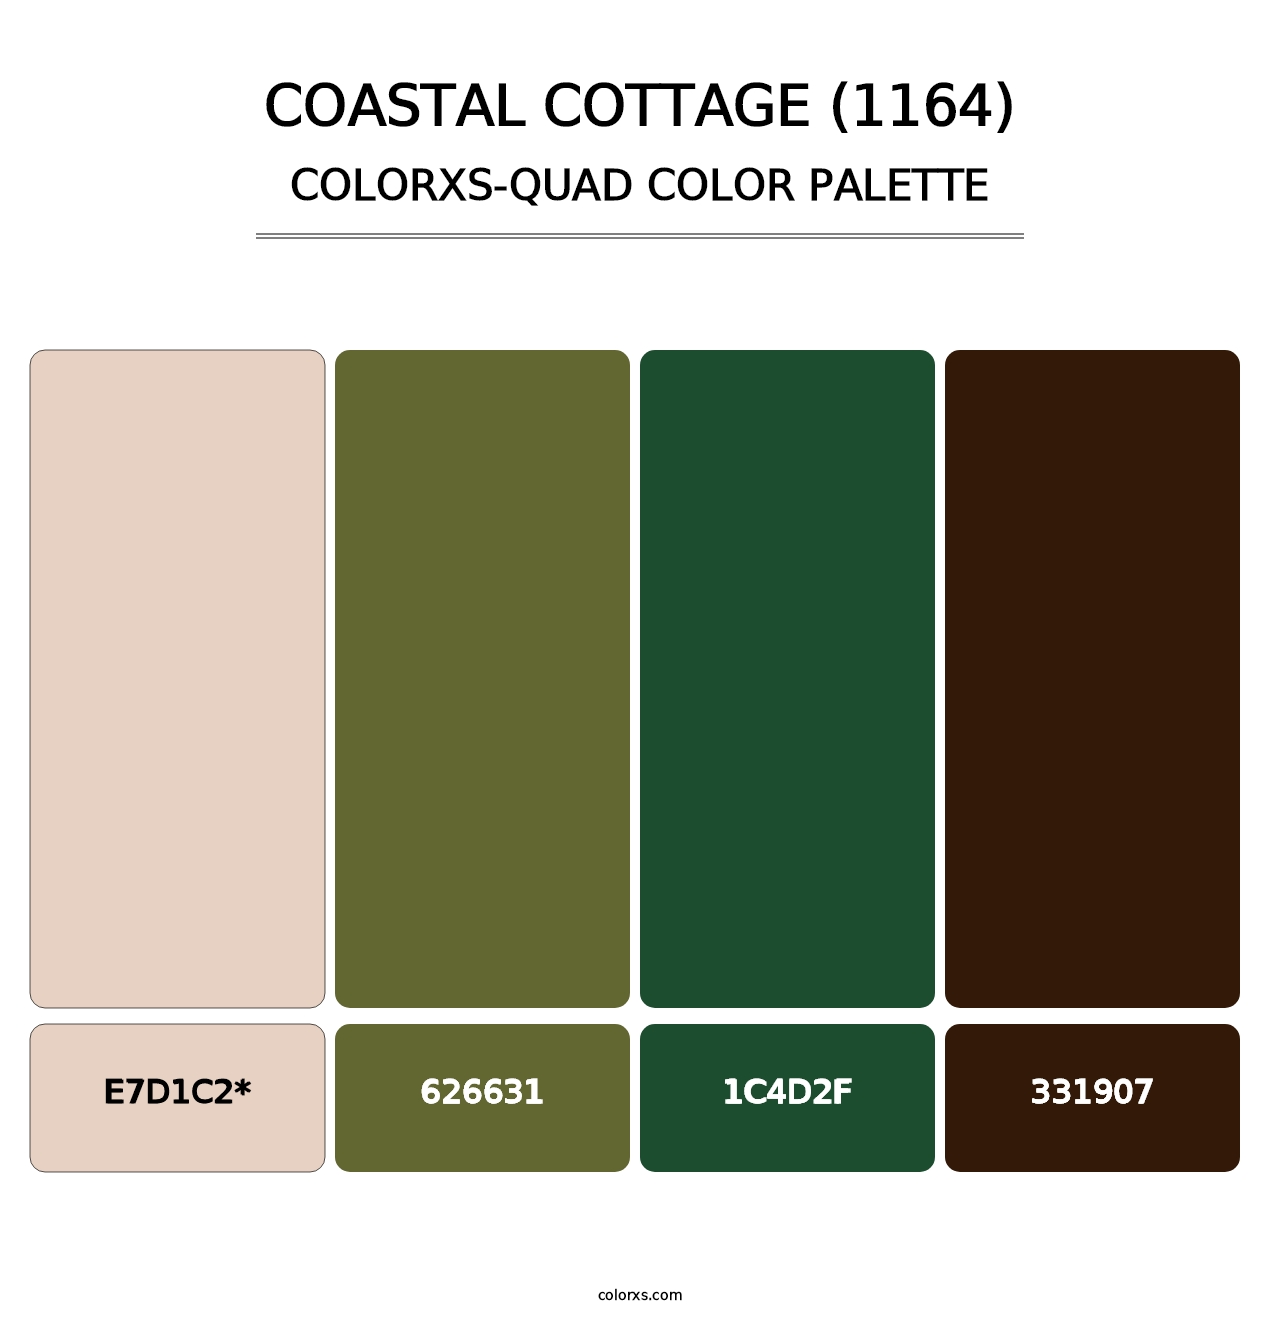 Coastal Cottage (1164) - Colorxs Quad Palette